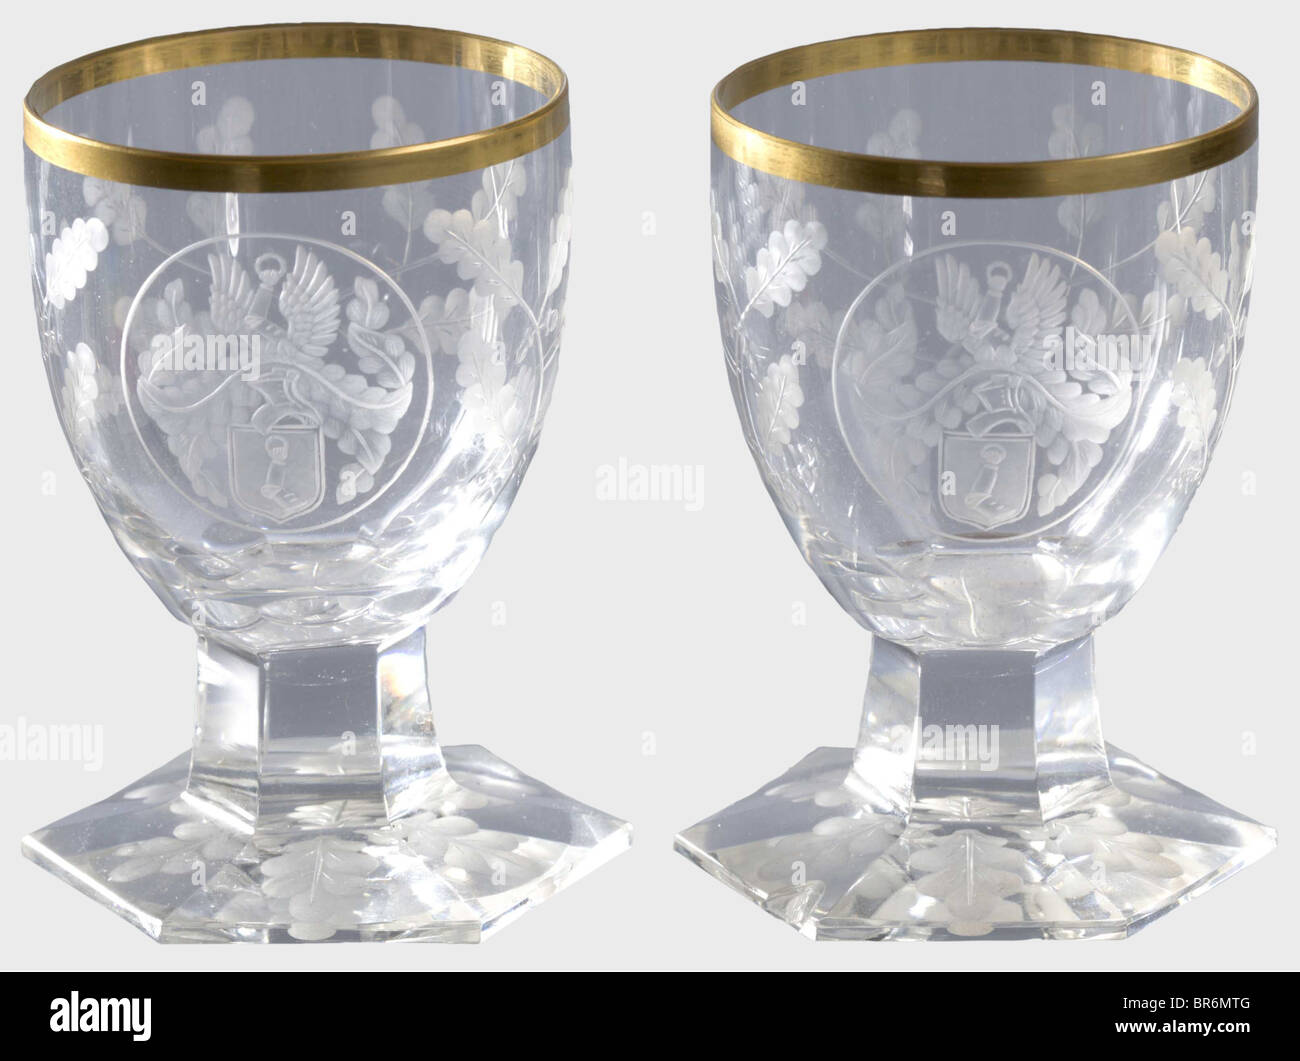 Hermann Göring - deux verres de liqueur, d'un service de table de chasseur.  Verre en cristal à facettes et découpé avec bordure en or. Les bras de la  famille Göring, surmontés d'un